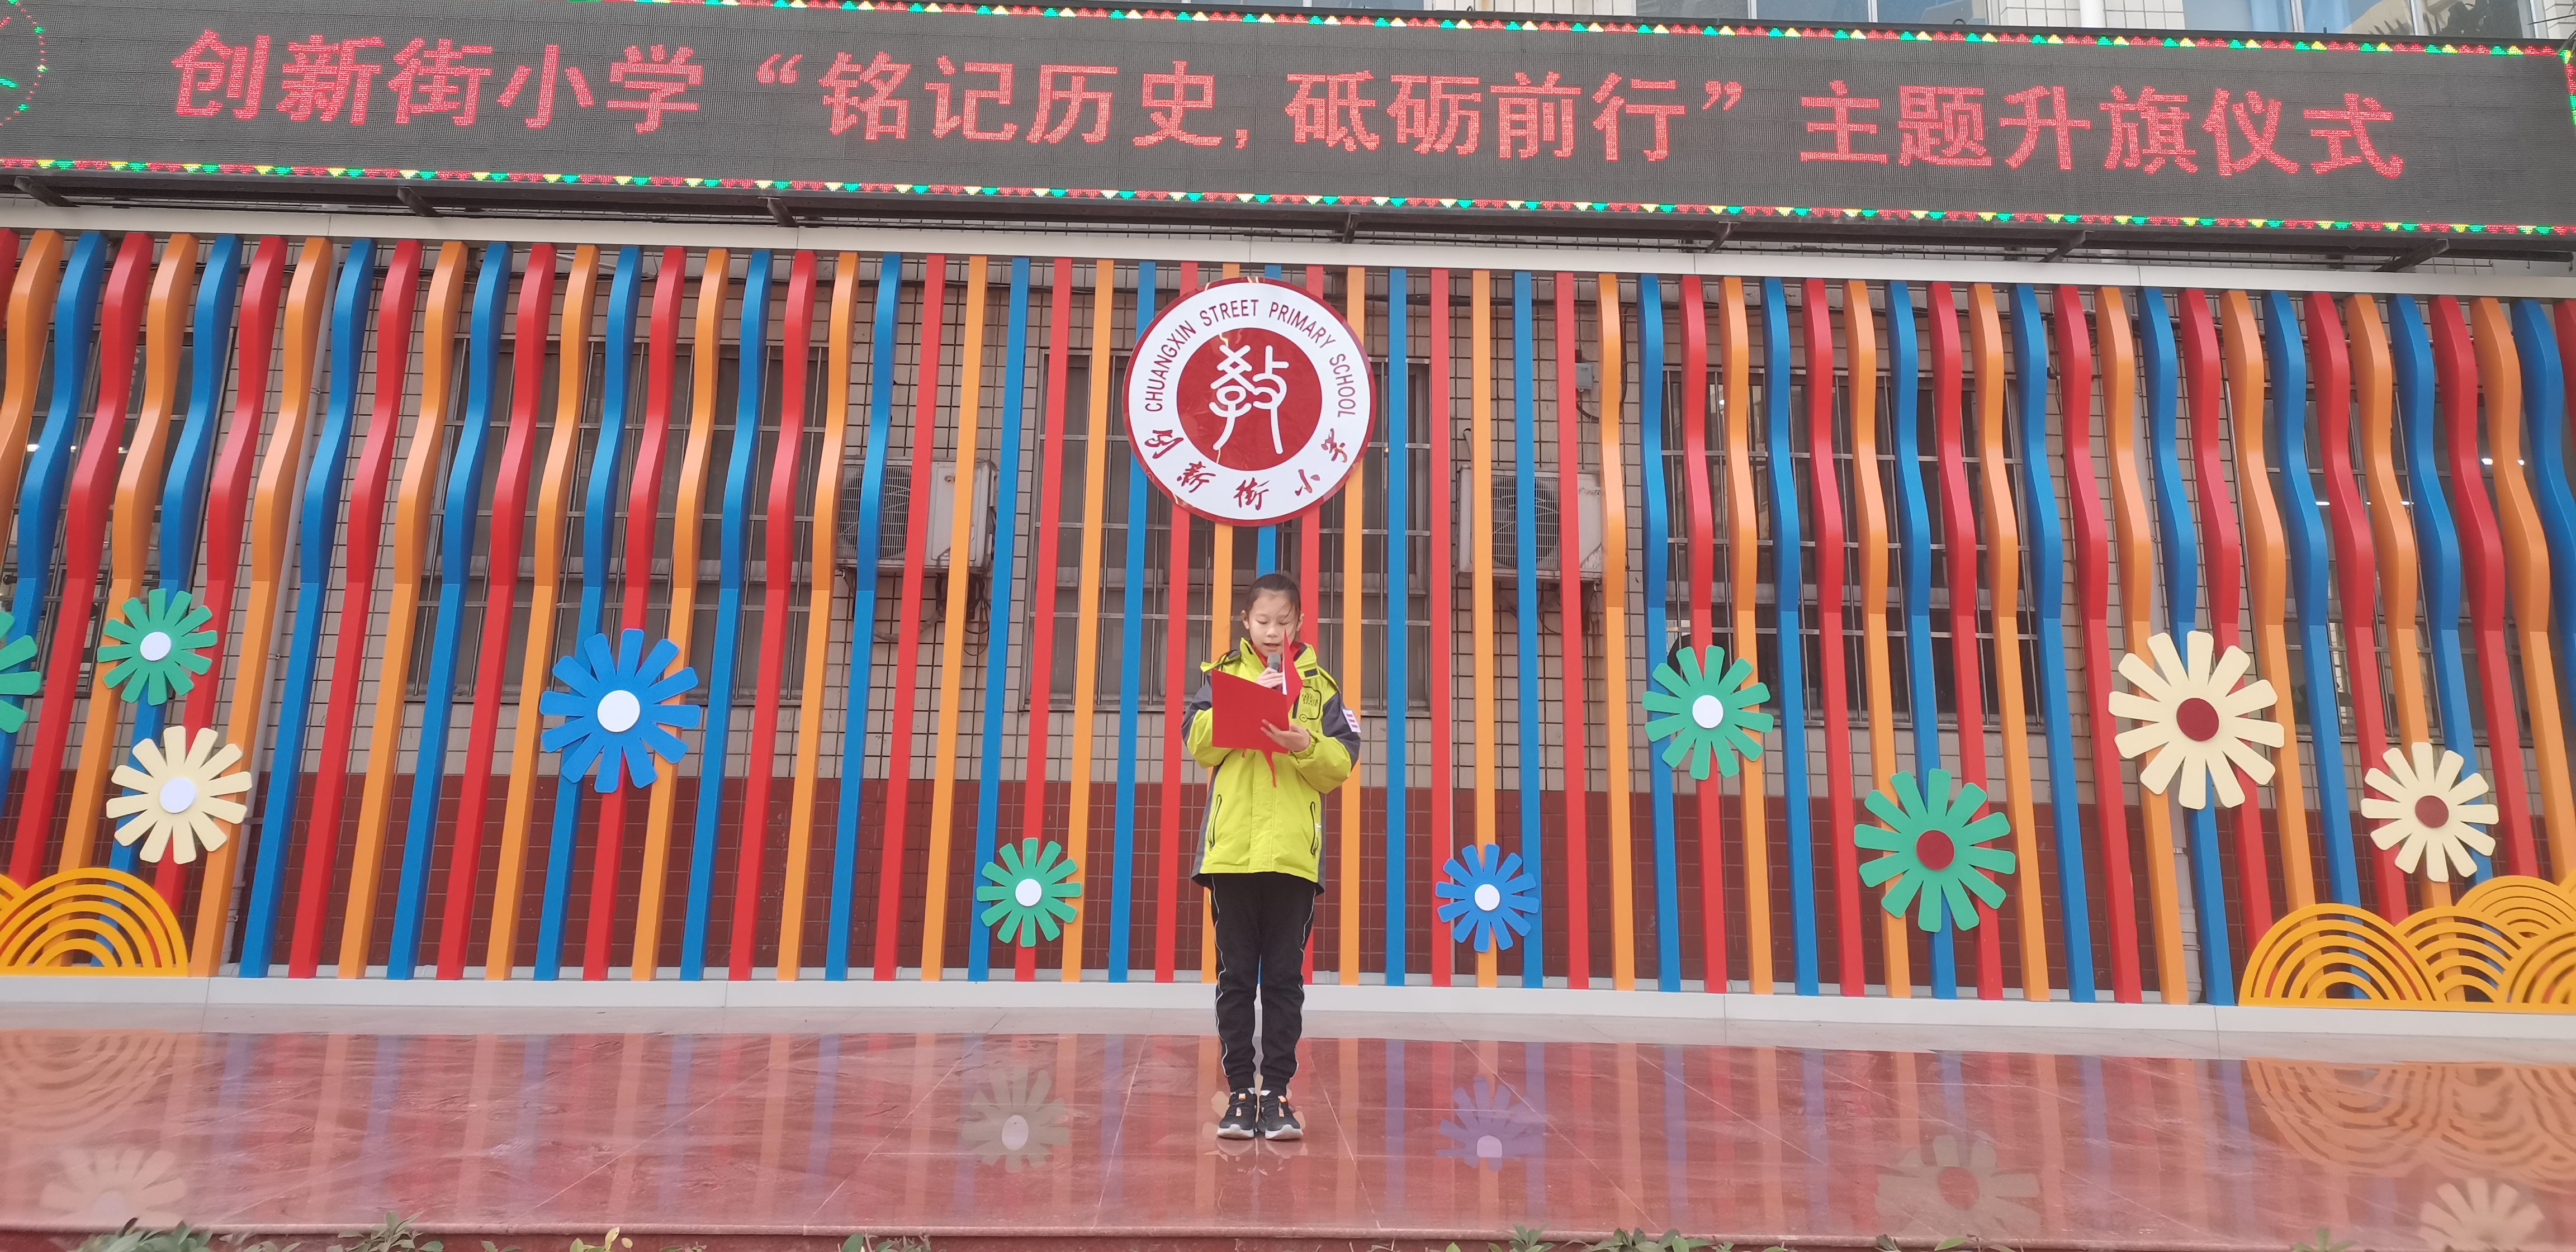 铭记历史,砥砺前行,郑州市管城区创新街小学举行主题升旗仪式